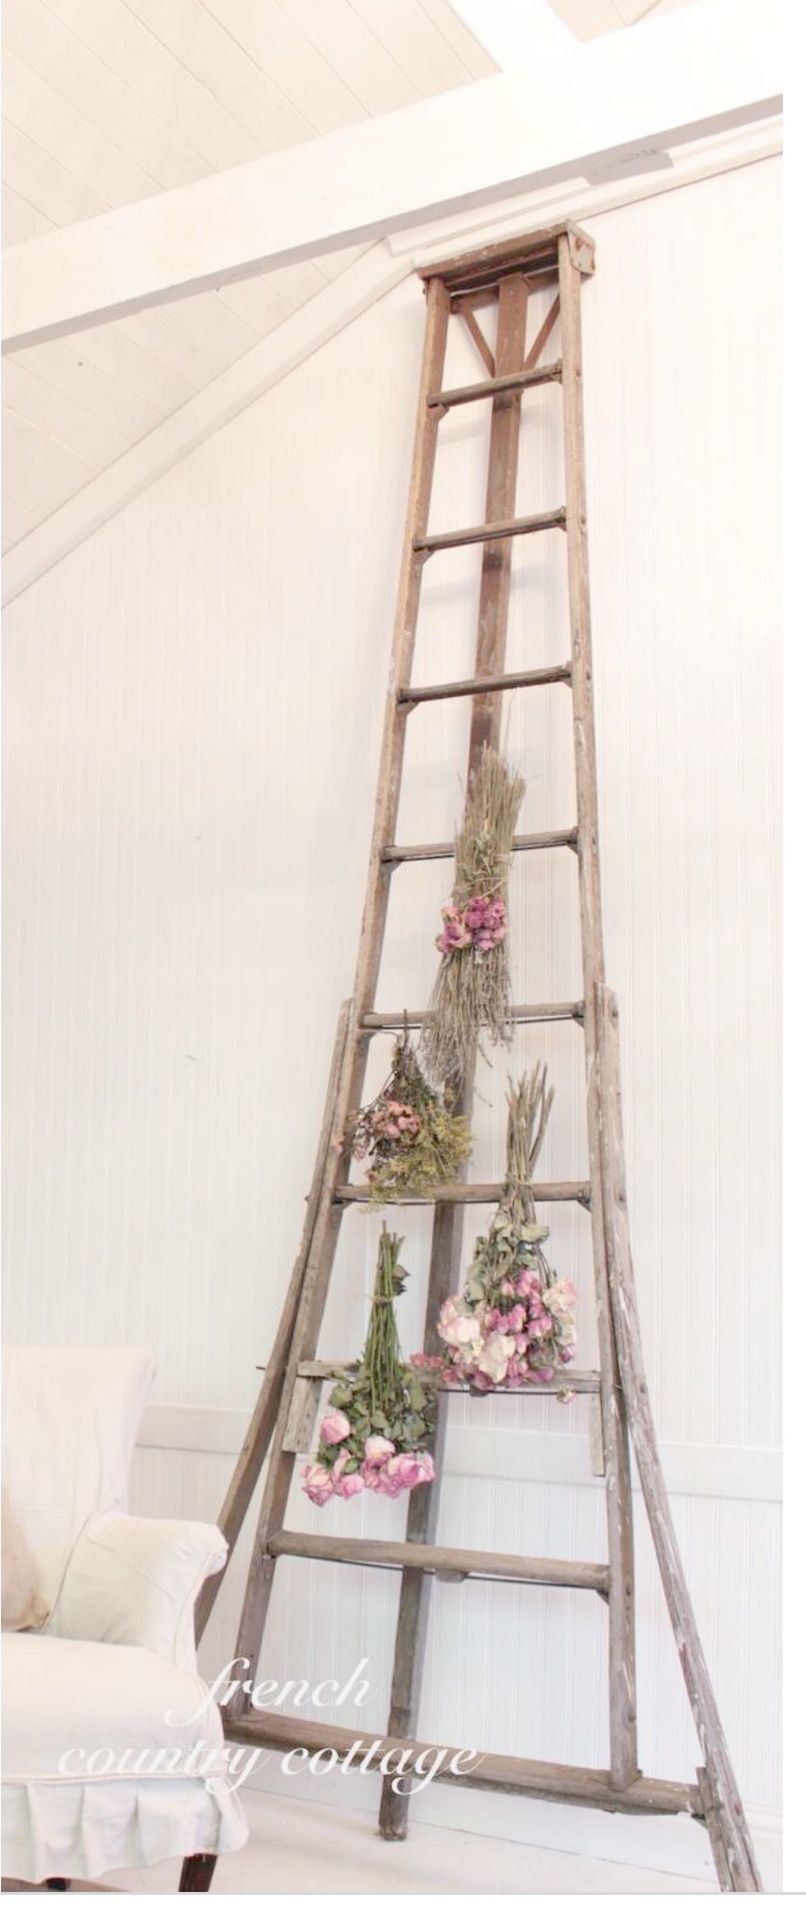 Antique orchard ladder